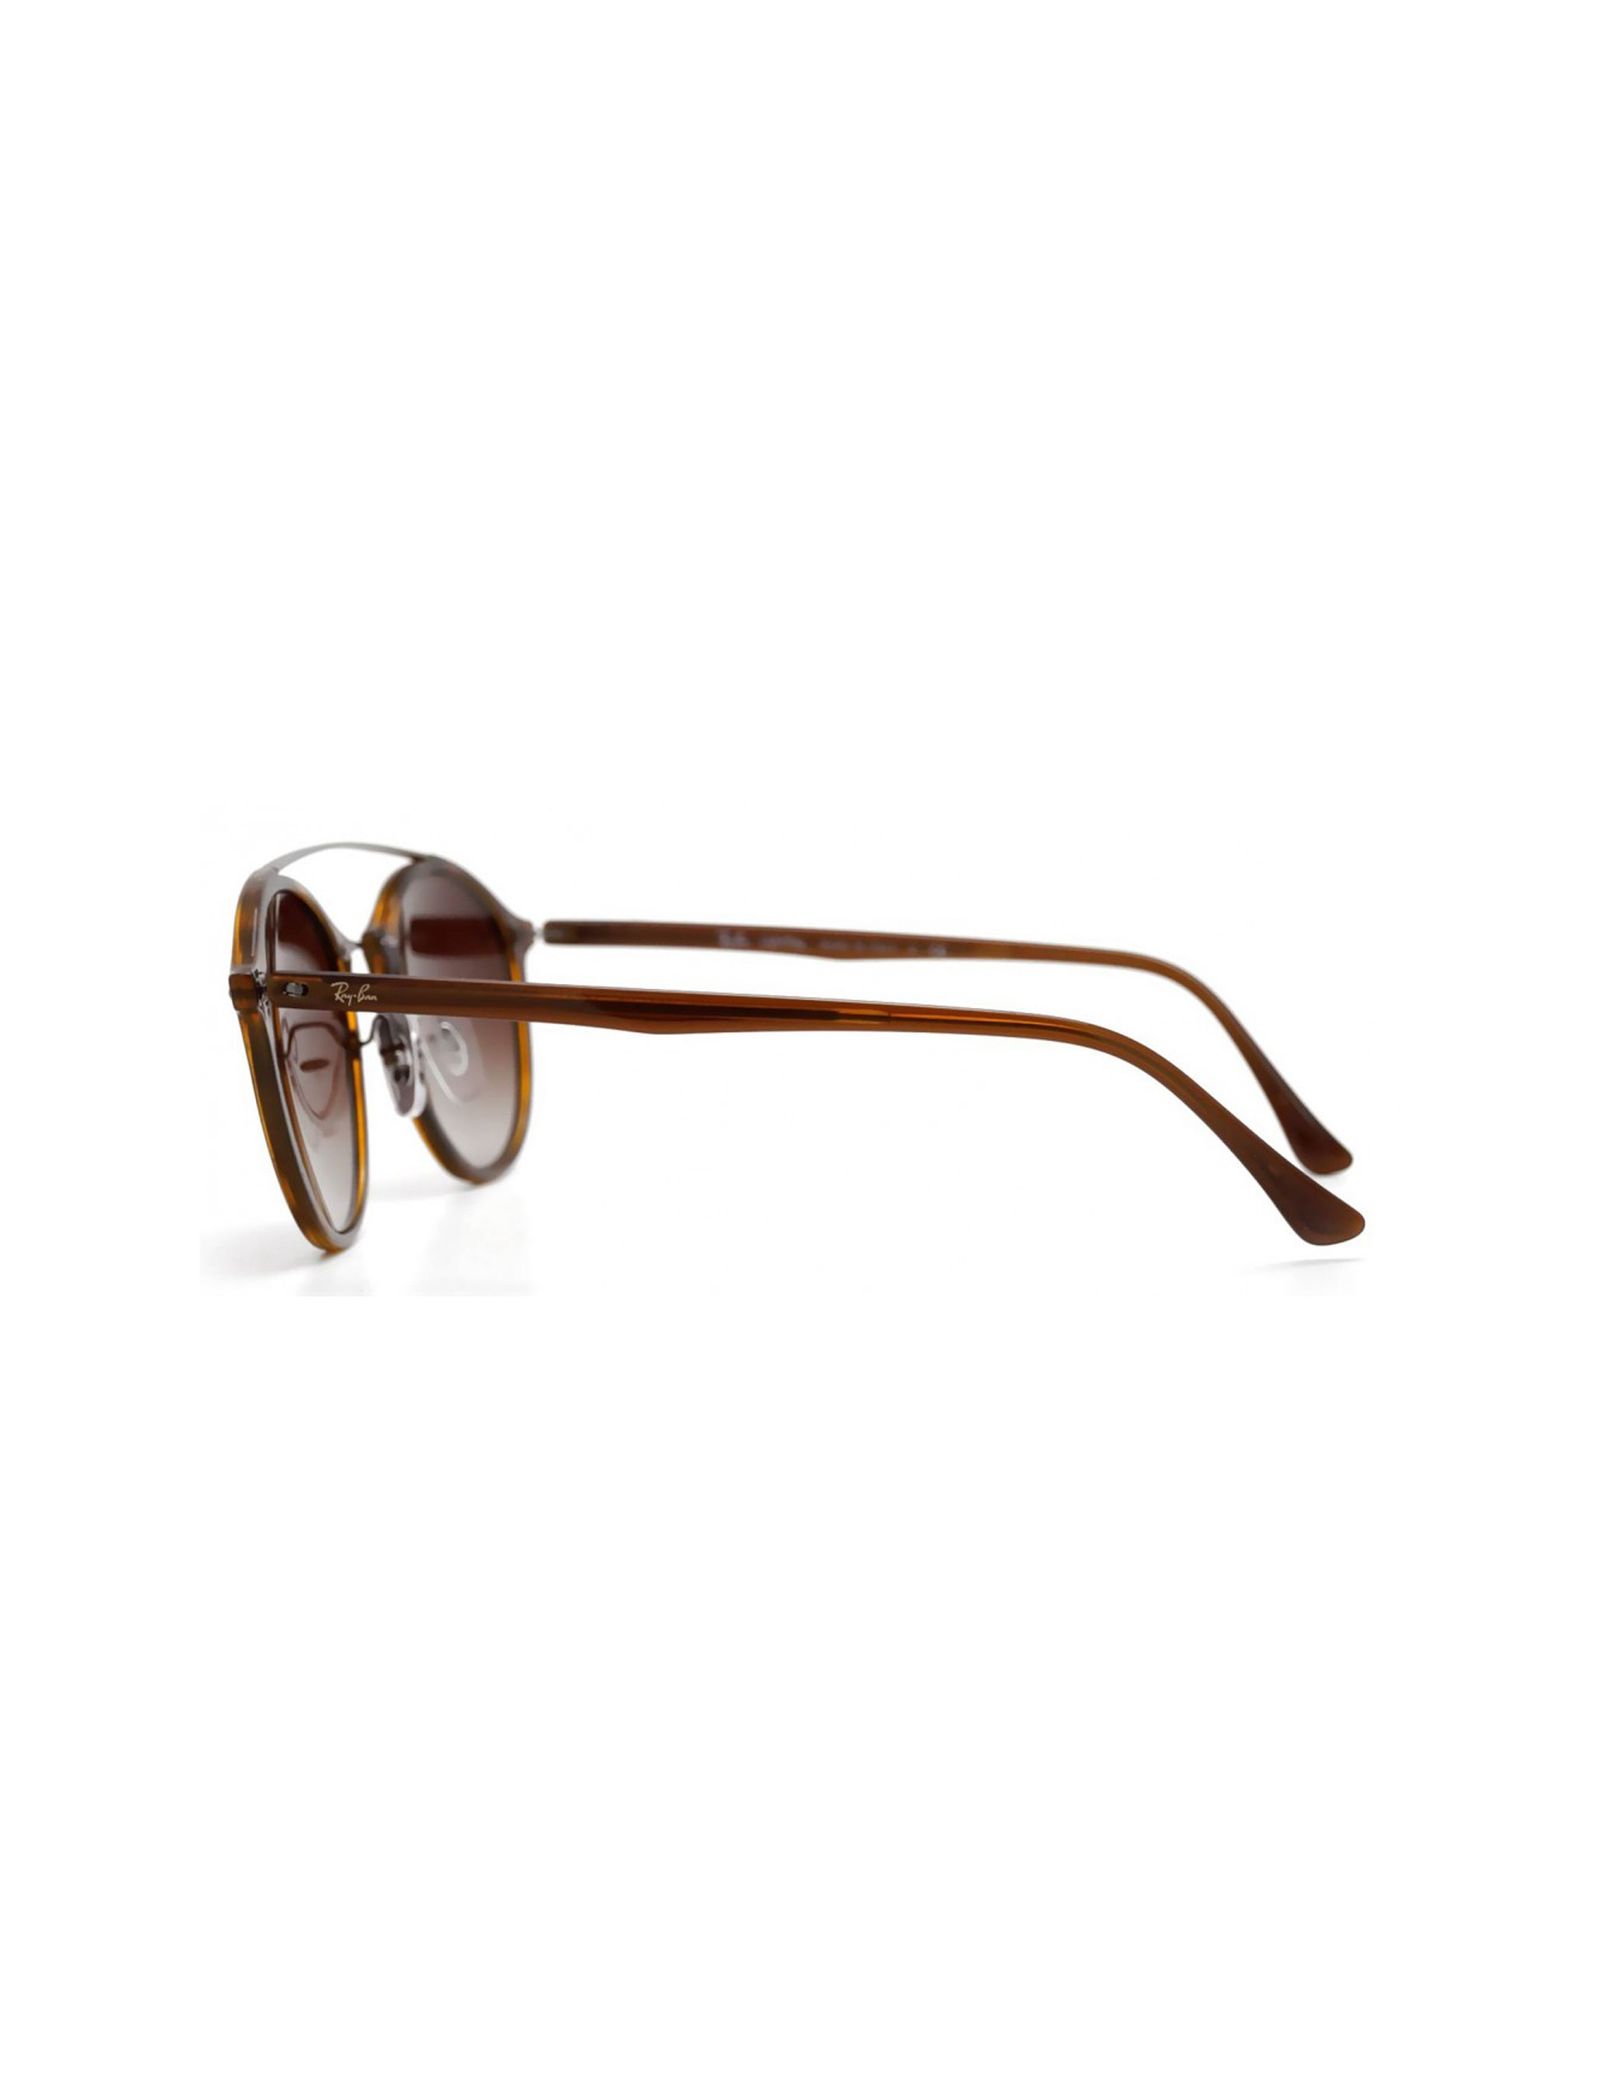 عینک آفتابی ری بن مدل 4266-6201/13 - قهوه ای - 3